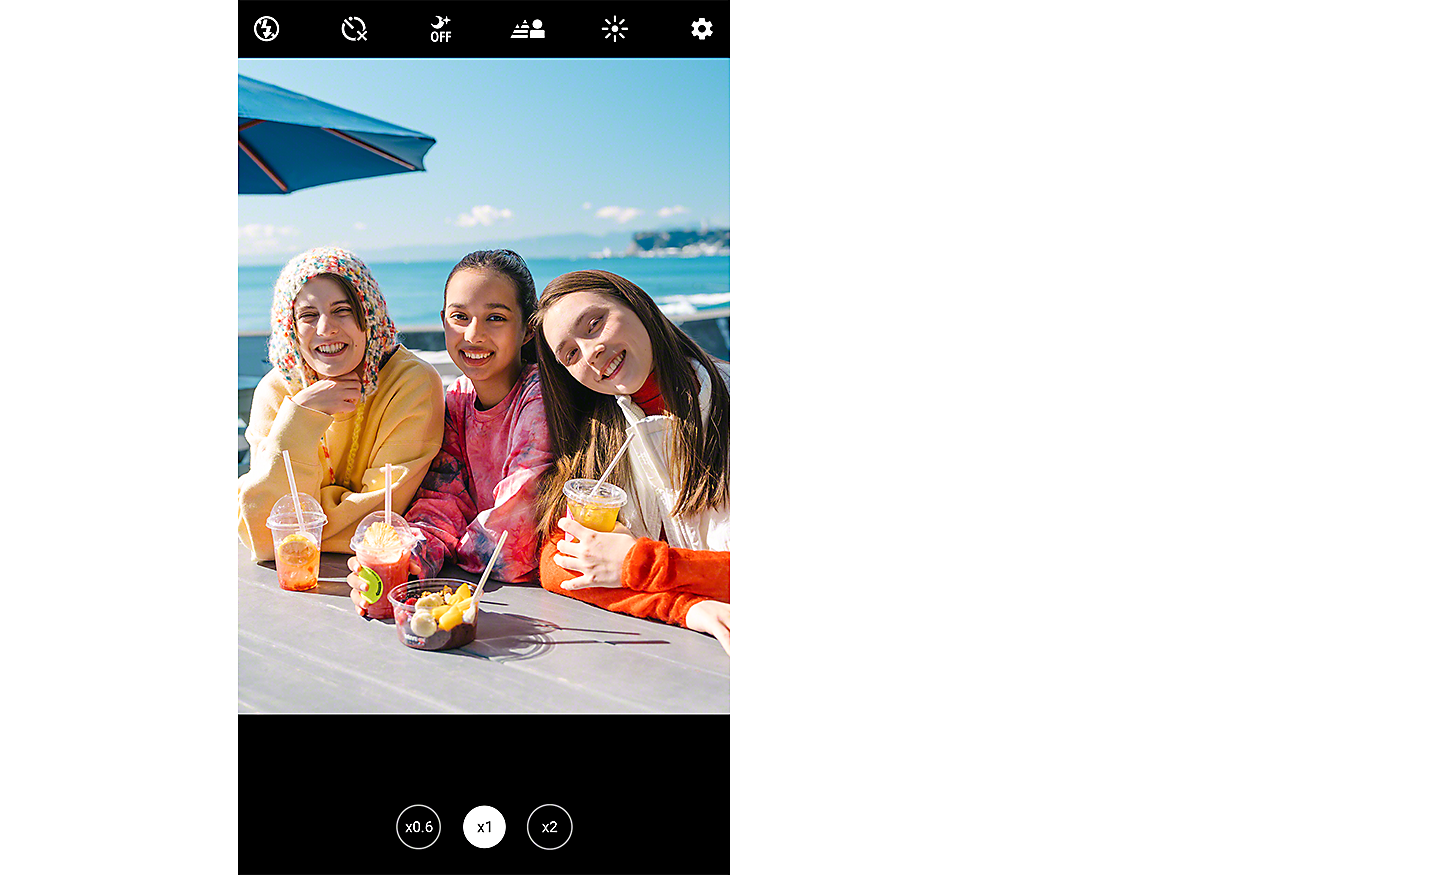 Posnetek zaslona kaže sliko treh mladih žensk, ki se nasmihajo proti fotoaparatu in sedijo za mizo, ki gleda proti morju